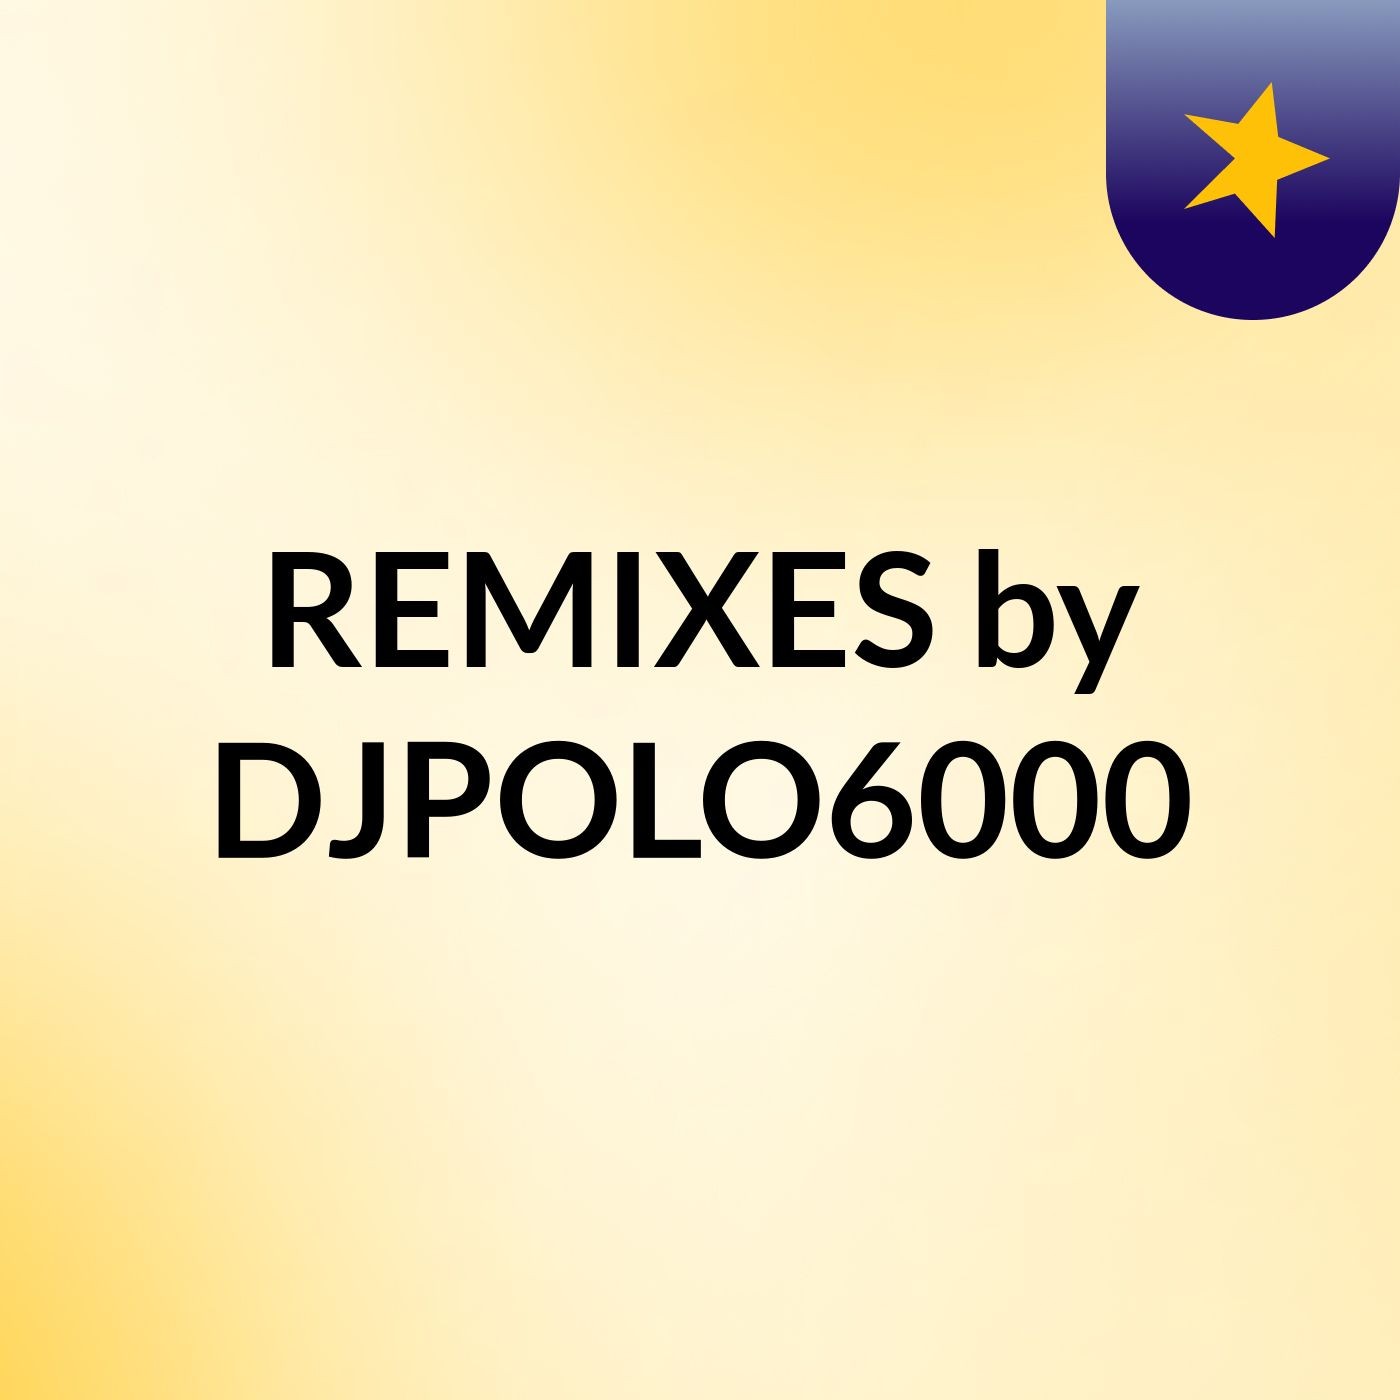 REMIXES by DJPOLO6000